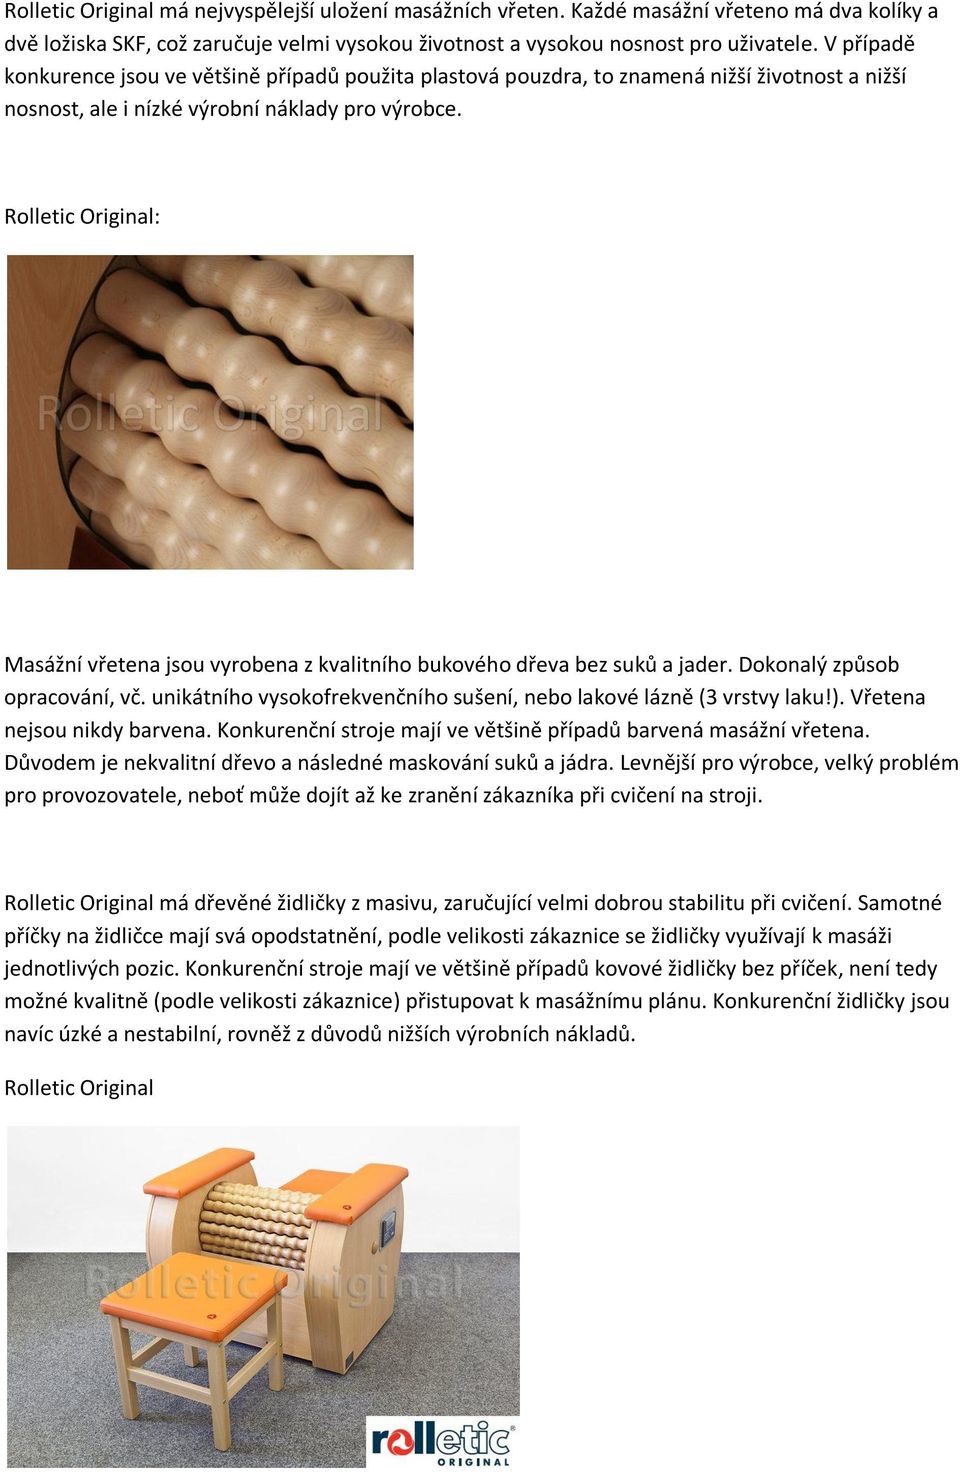 Rolletic Original: Masážní vřetena jsou vyrobena z kvalitního bukového dřeva bez suků a jader. Dokonalý způsob opracování, vč. unikátního vysokofrekvenčního sušení, nebo lakové lázně (3 vrstvy laku!).